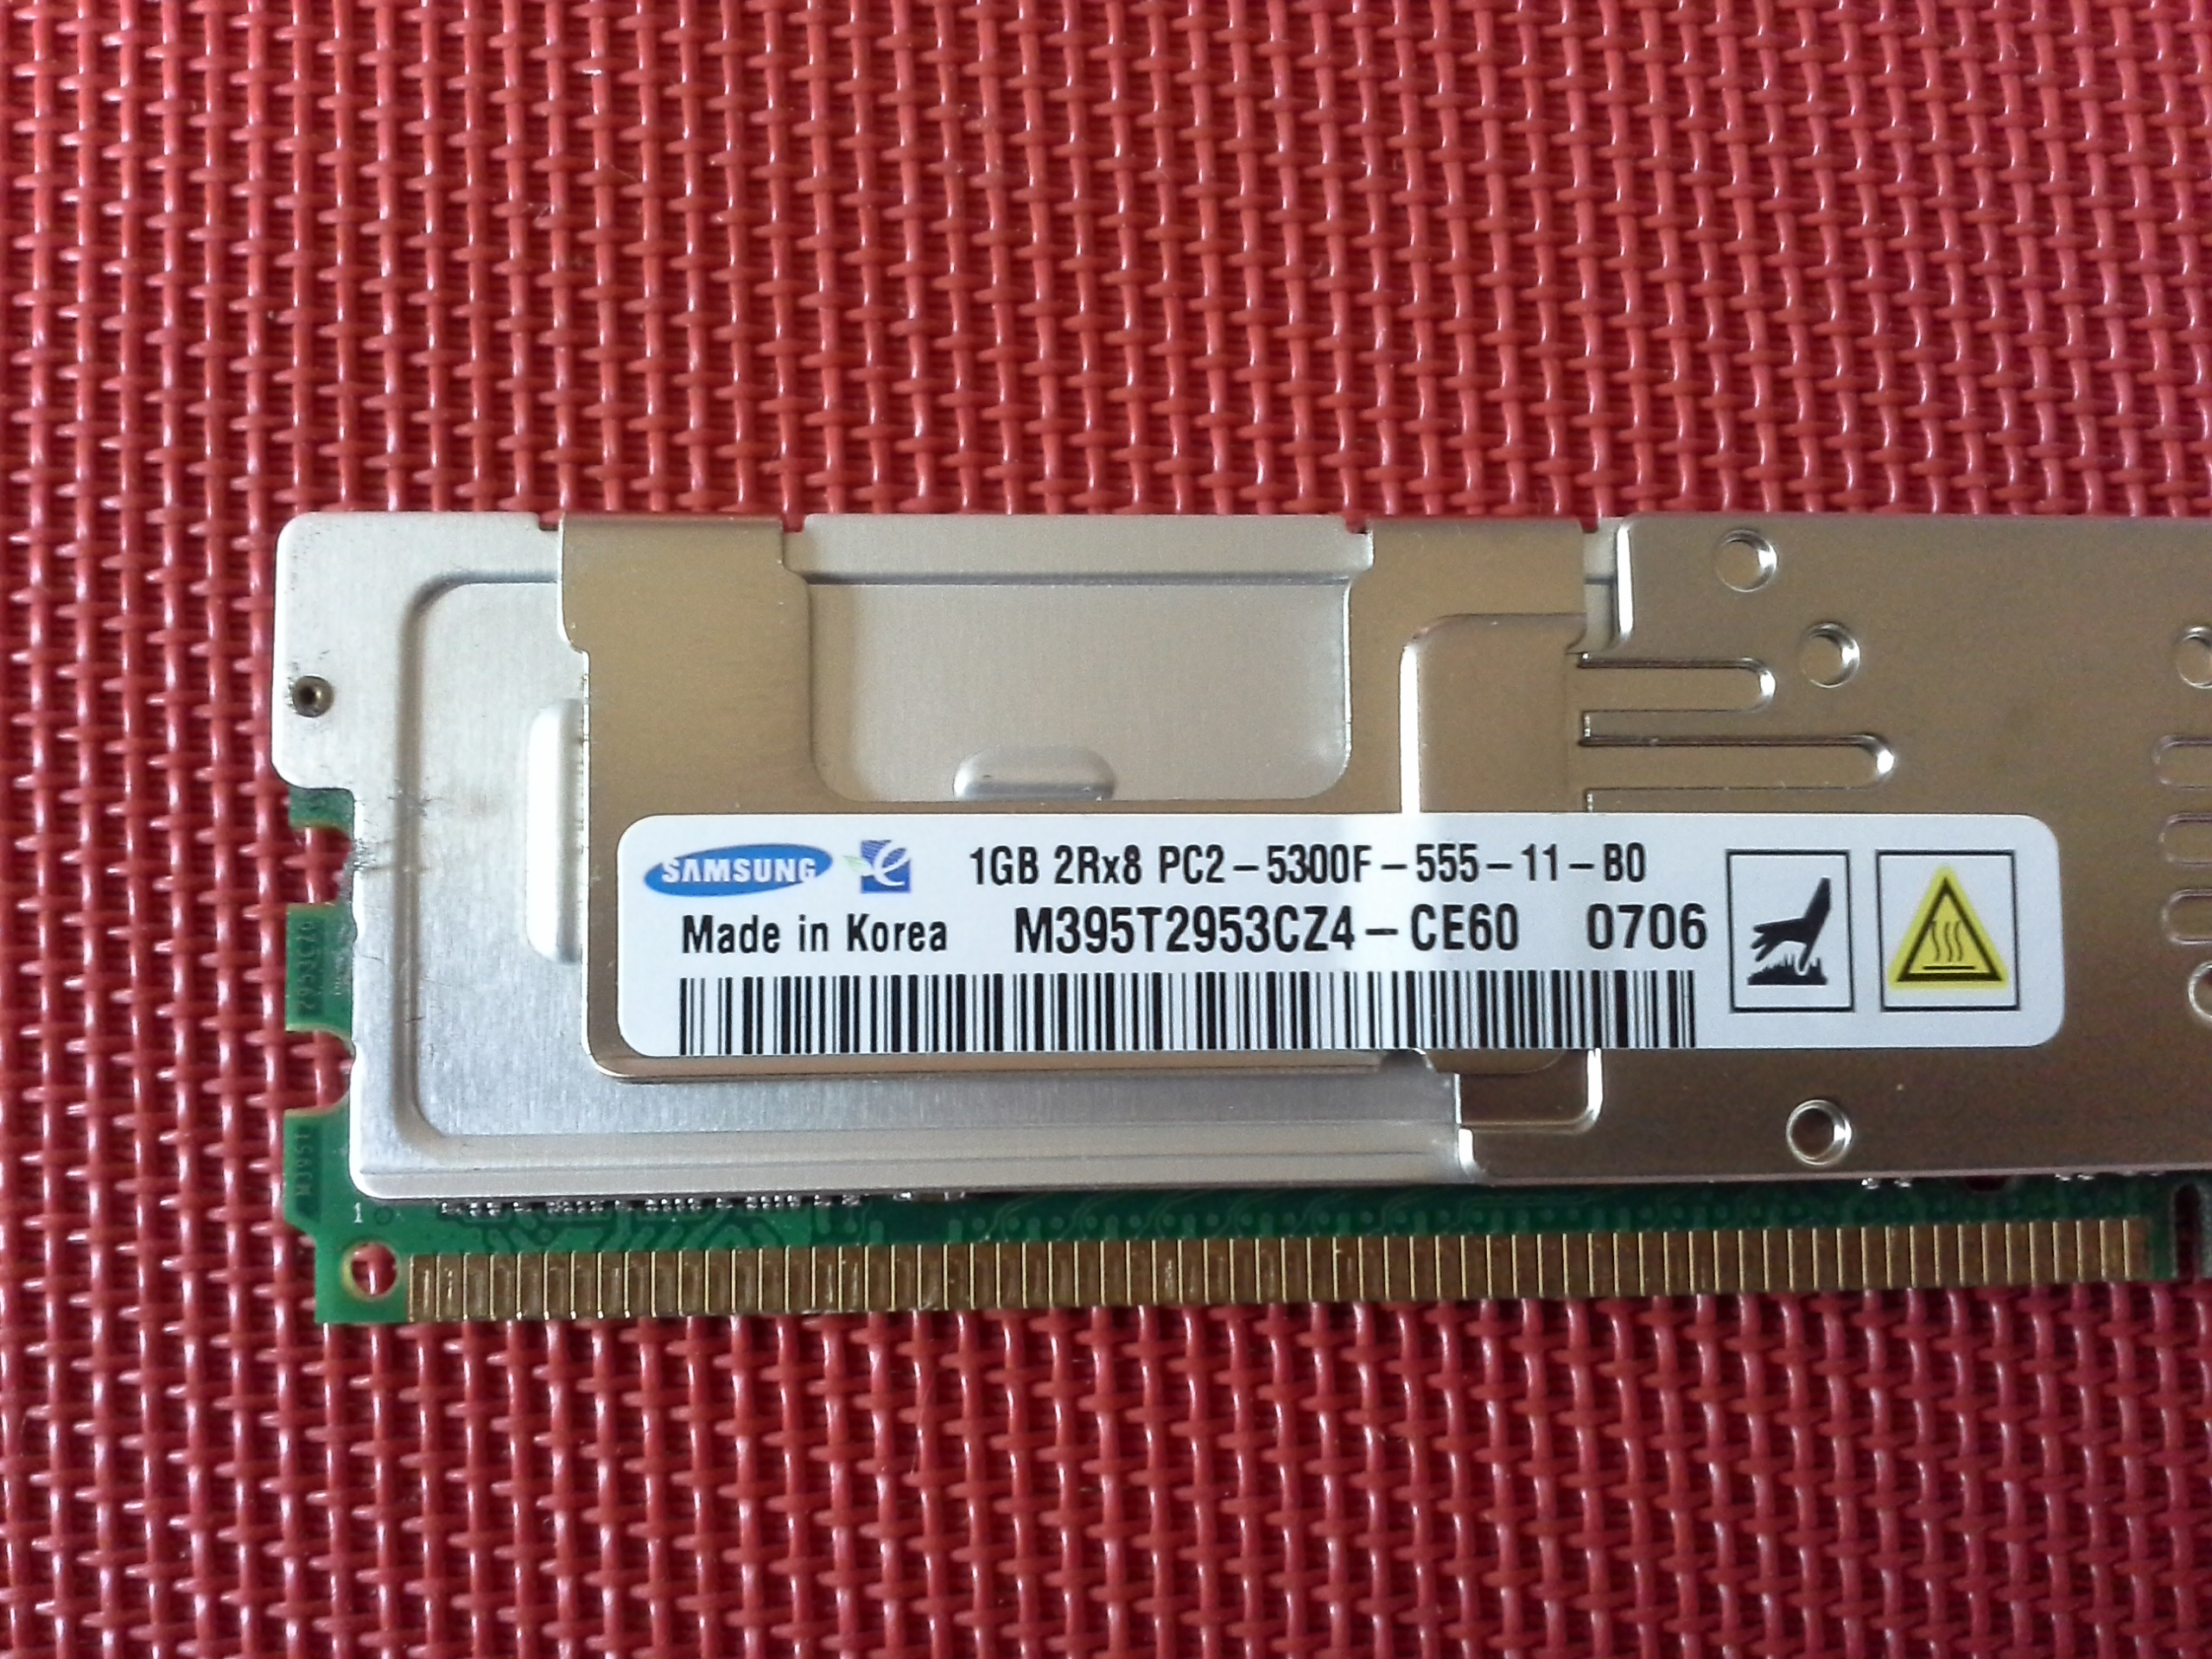 Samsung 1GB-2RX8 PC2-5300F-555-11-B0 DDR2 667MHz